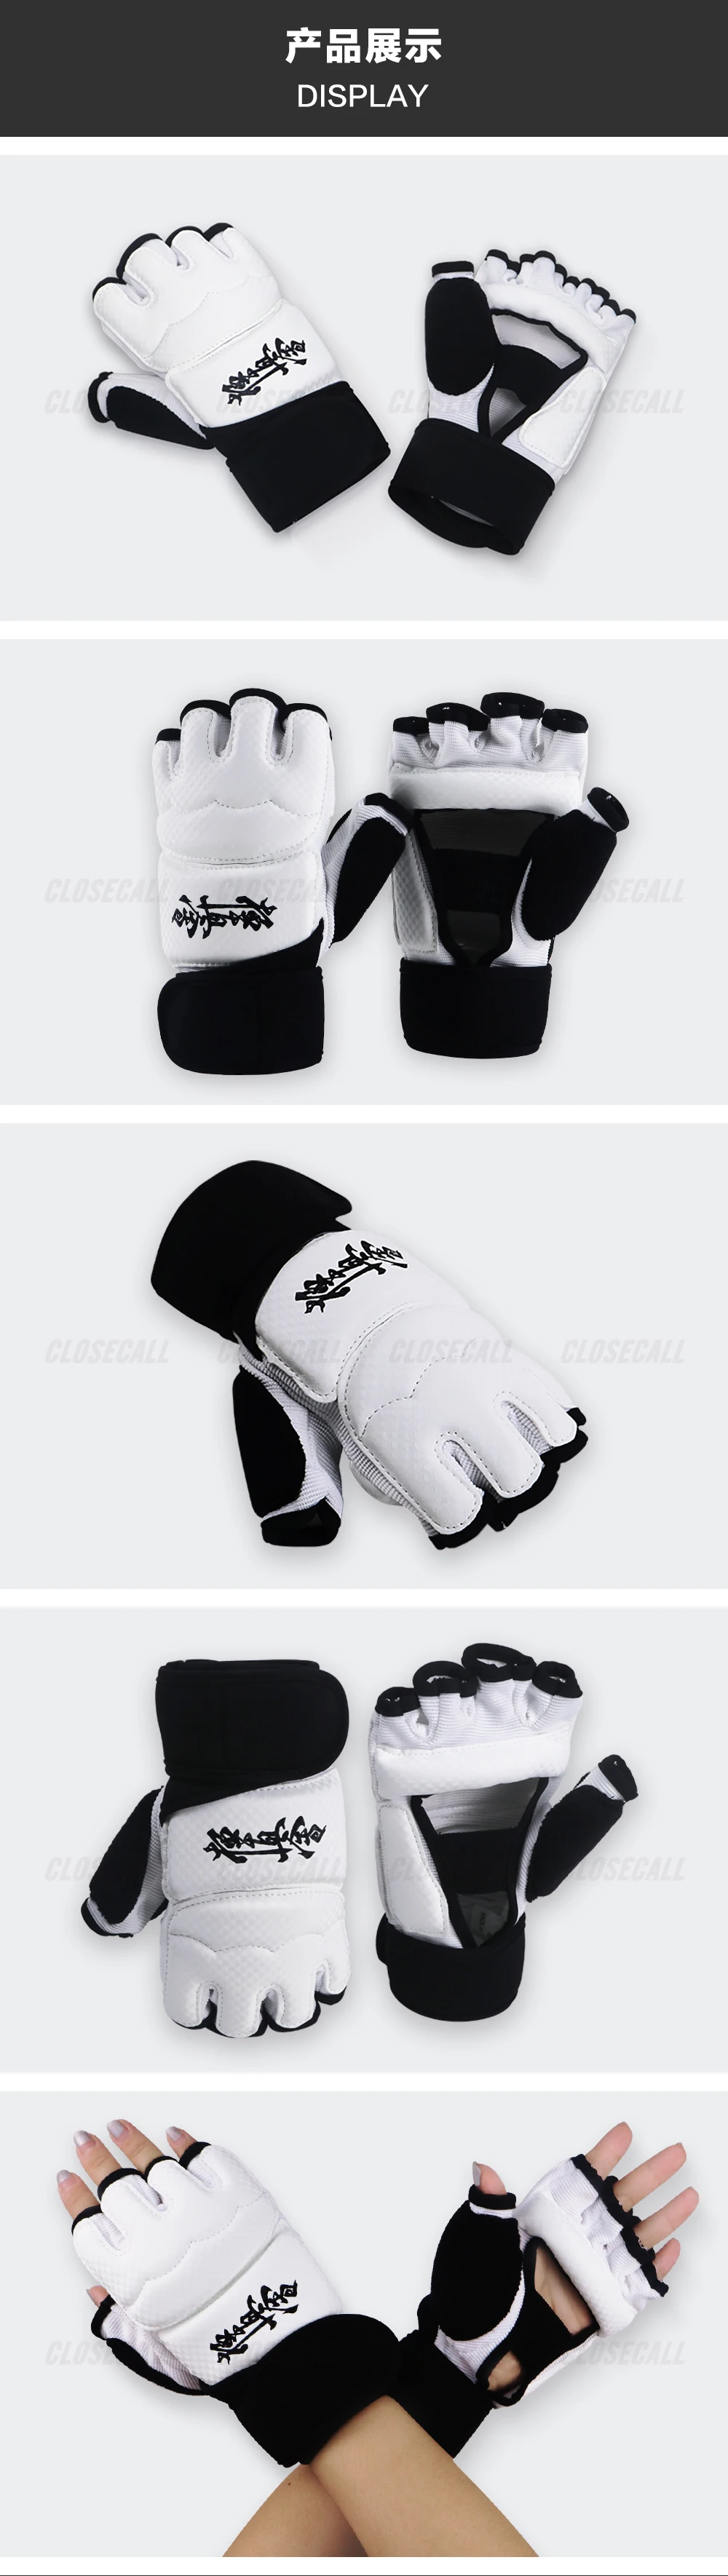 Киокушин будет боксерские перчатки каратэ перчатки защита рук удар Боксерские перчатки без пальцев половина пальца киокушин удар детей взрослых Pr